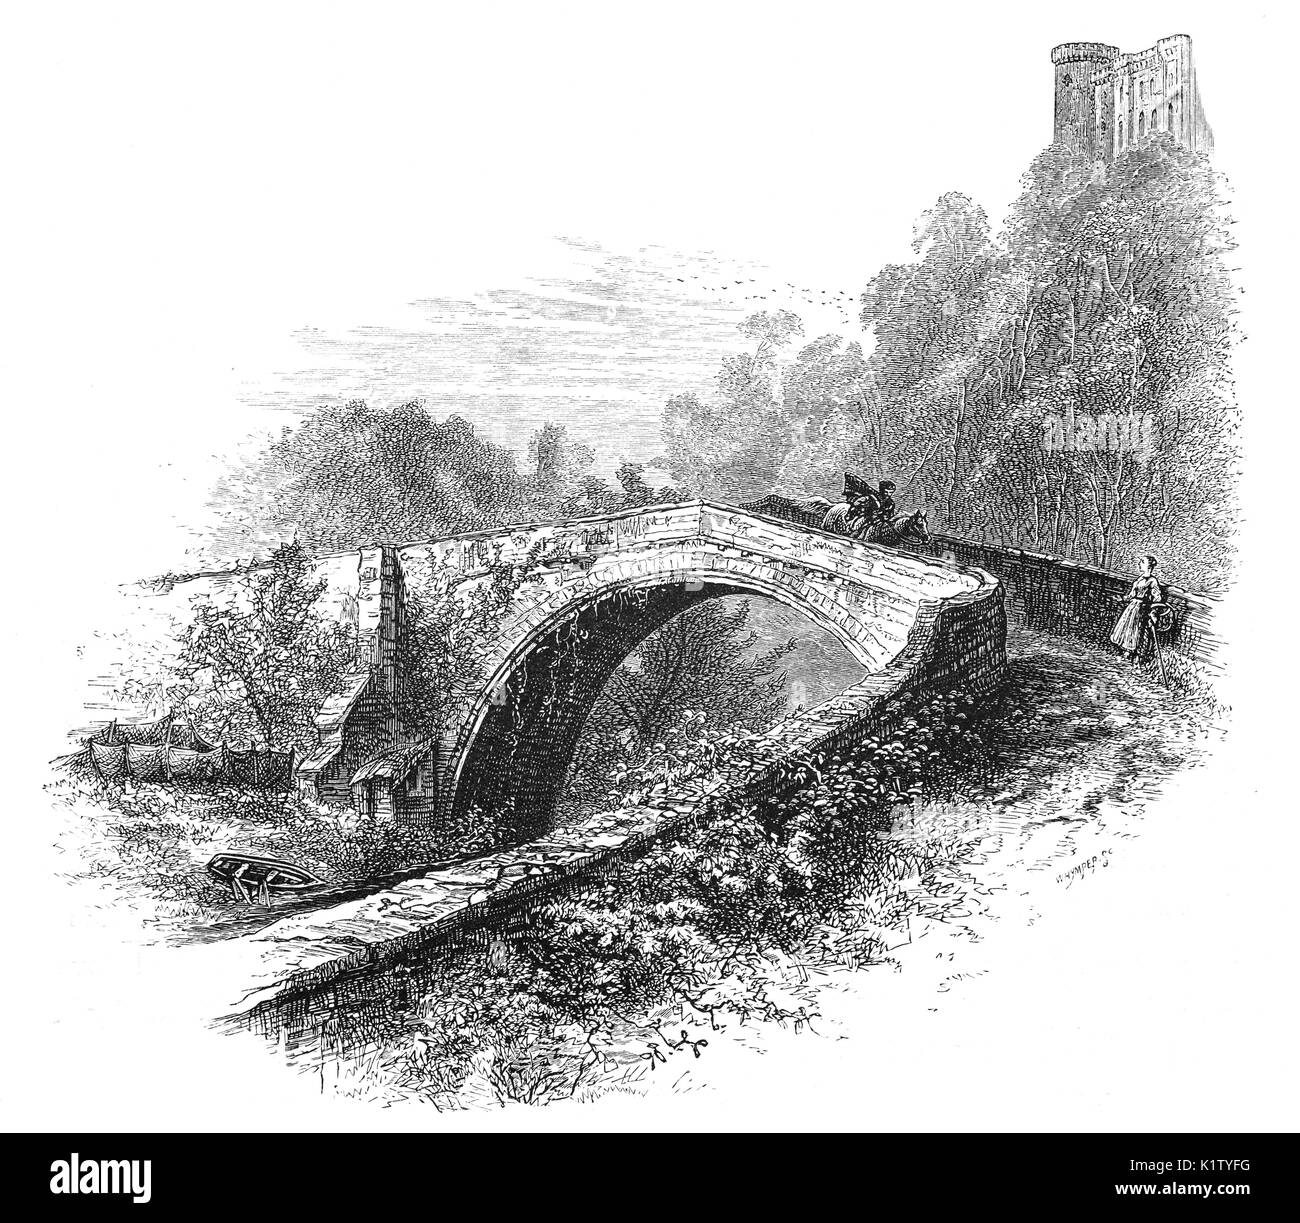 1870 : un cavalier traversant le pont médiéval construit en 1511 Twizell, deux ans avant la bataille de Flodden, fourni la seule traversée de la rivière à sec jusqu'à ce qu'entre le tweed et etal. Au-dessus des ruines de château Twizell, aka Twizel, Tillmouth Park, Northumberland, dans le nord de l'Angleterre. Banque D'Images